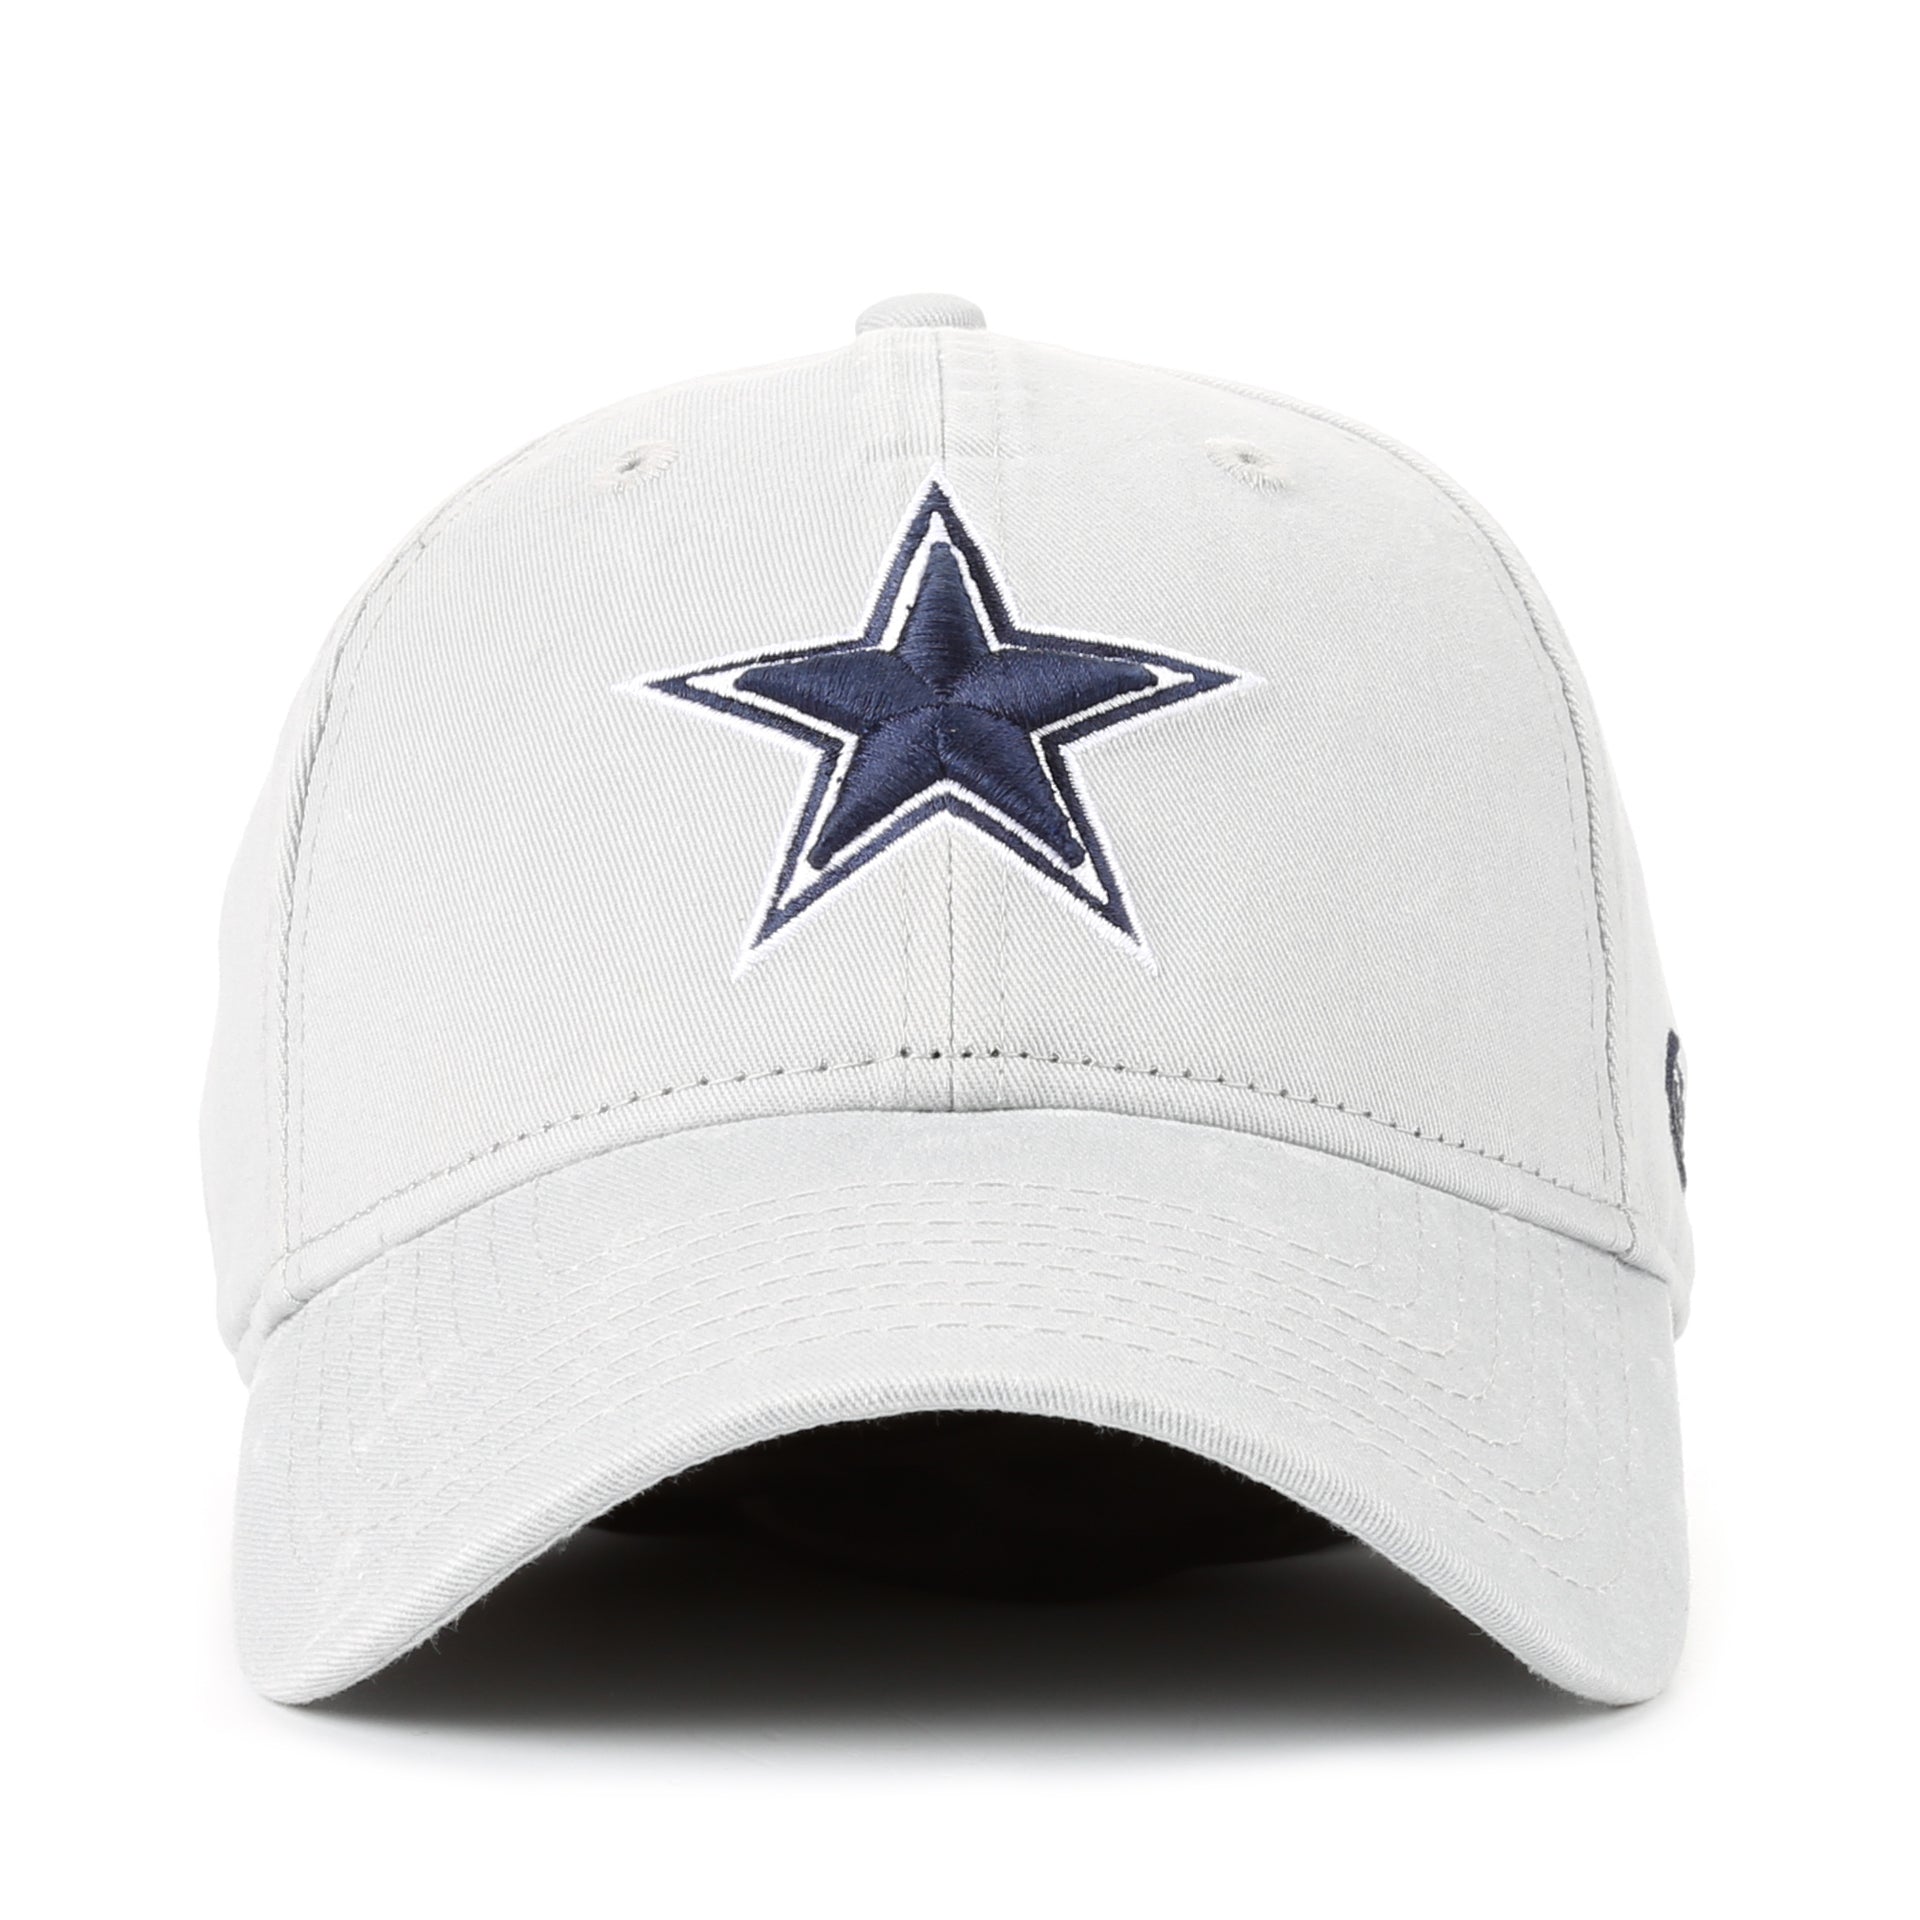 nfl cowboys cap